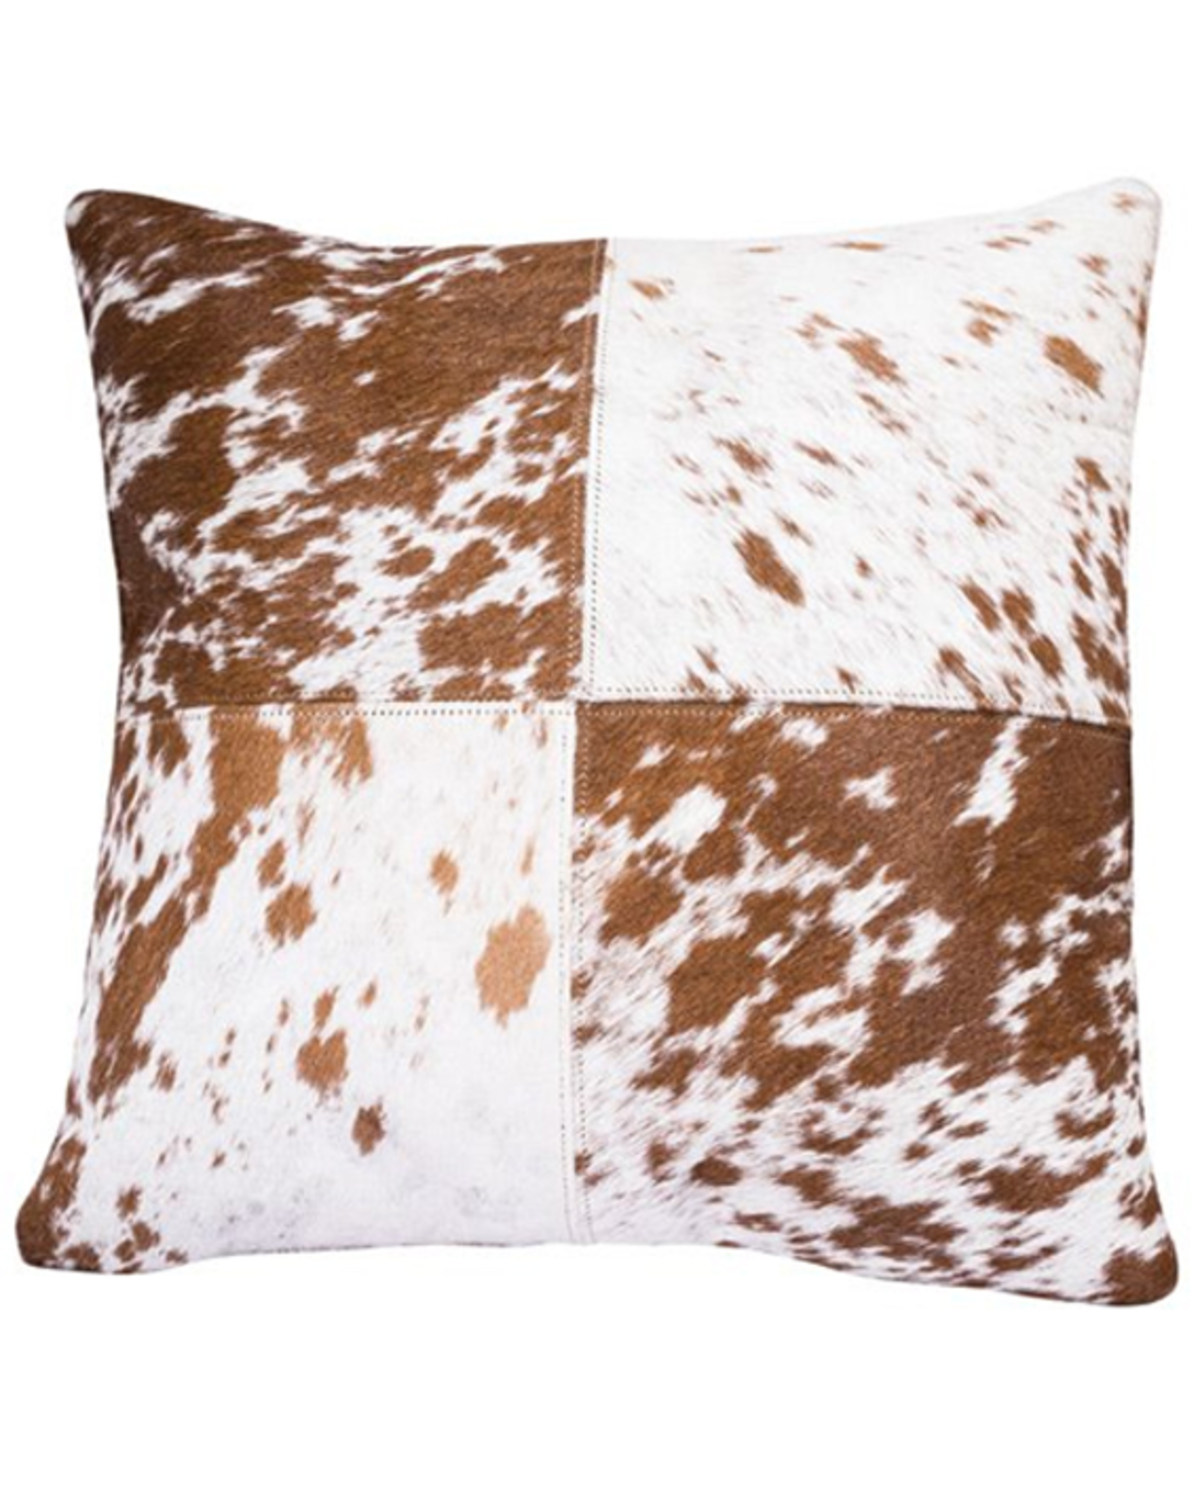 Myra Bag Brown & White Dapple Cushion Cover